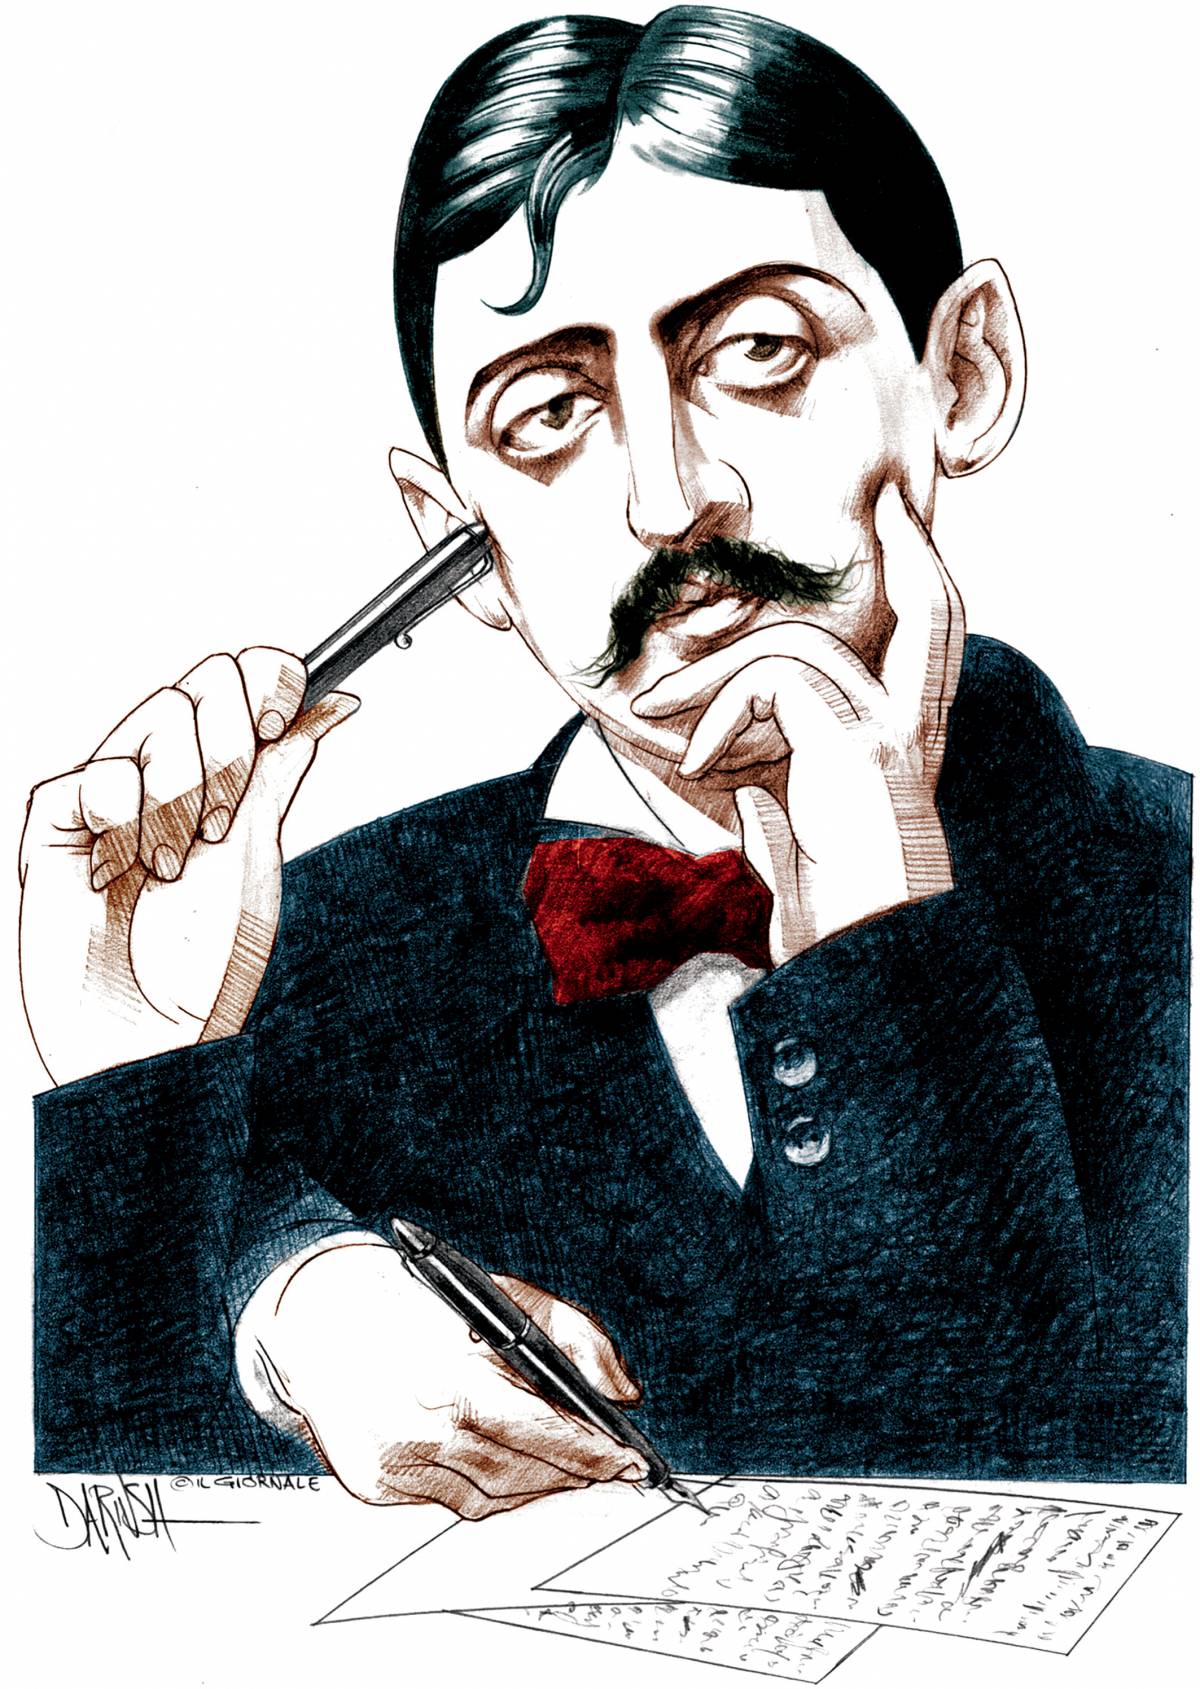 Proust si liberò del segretario-amante facendolo assumere dall'amico banchiere